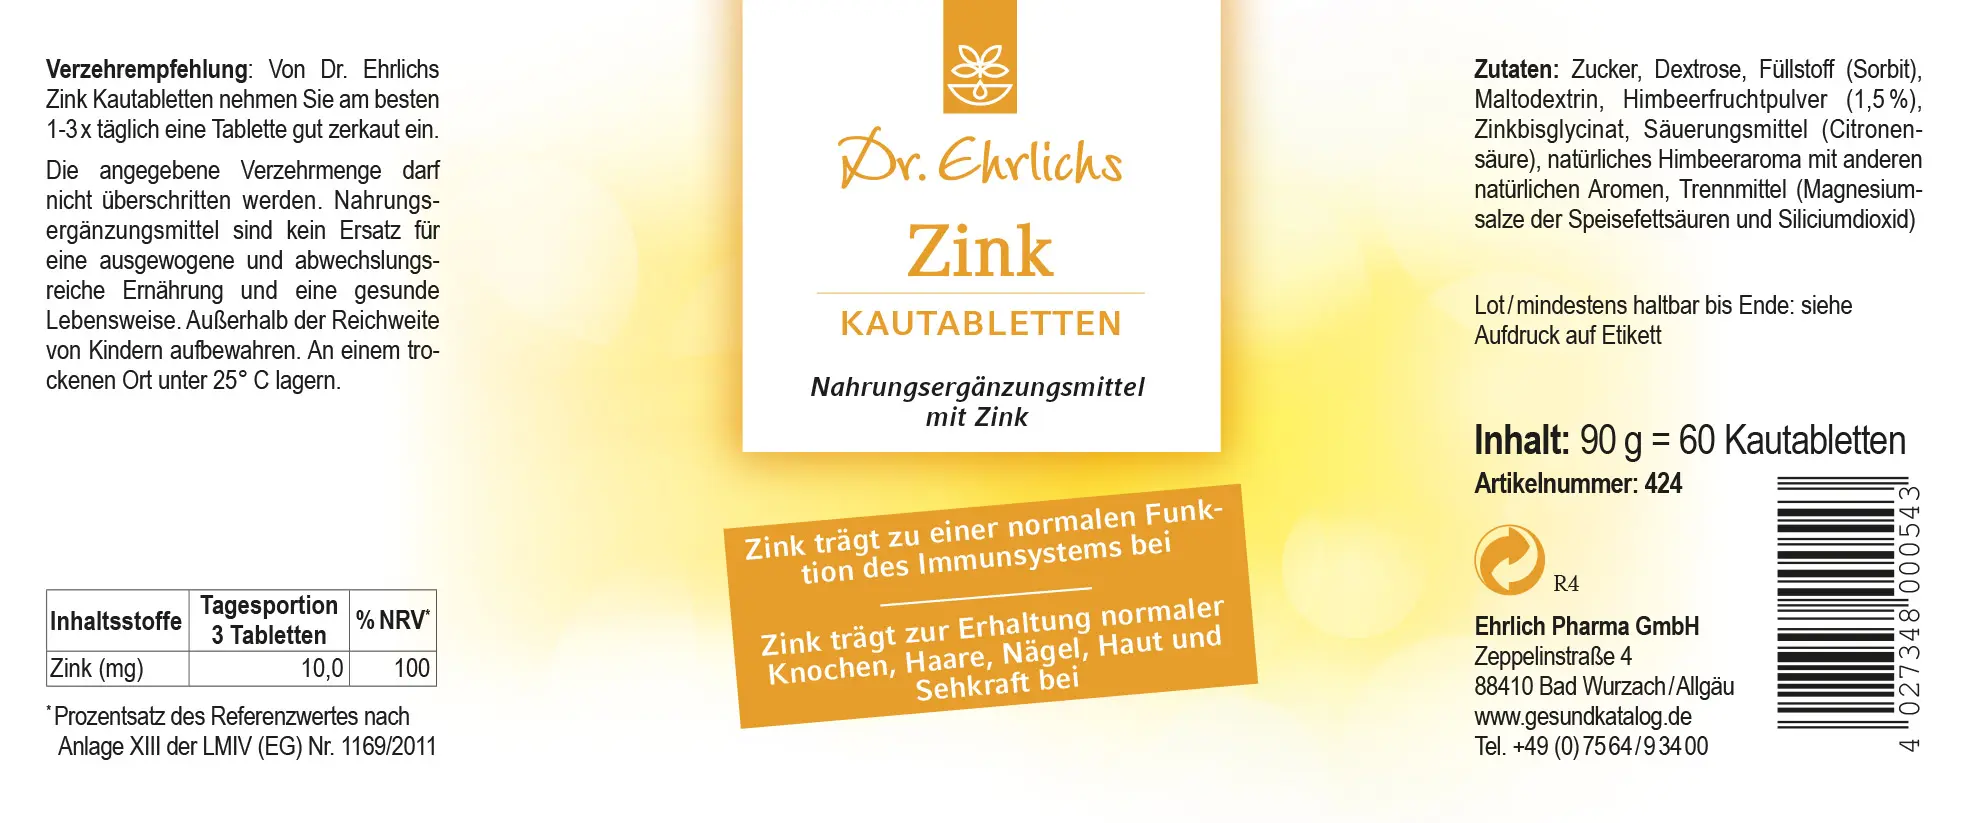 Dr. Ehrlichs Zink Kautabletten - 60 Stück